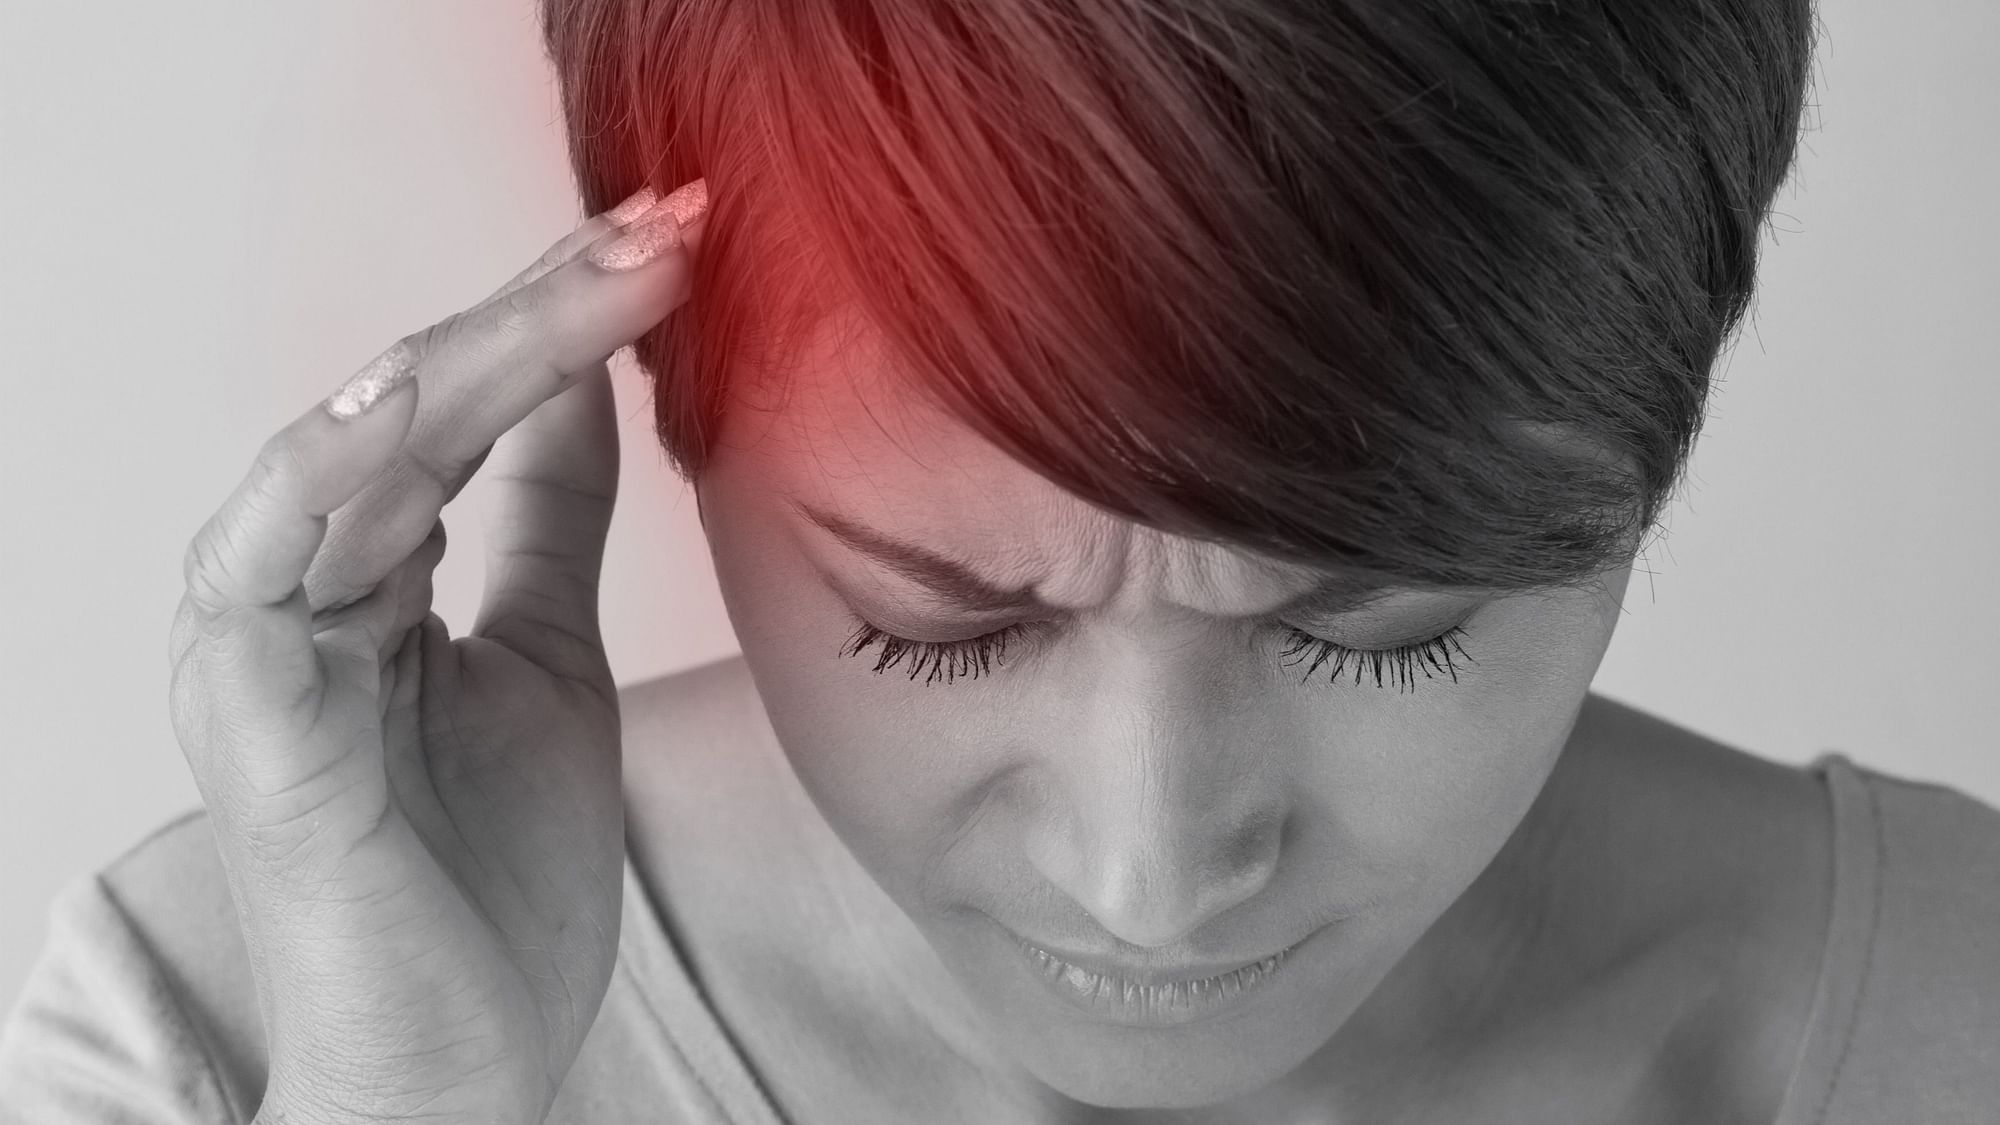 कुछ फूड्स सिरदर्द को दूर रखने में मदद कर सकते हैं!&nbsp;